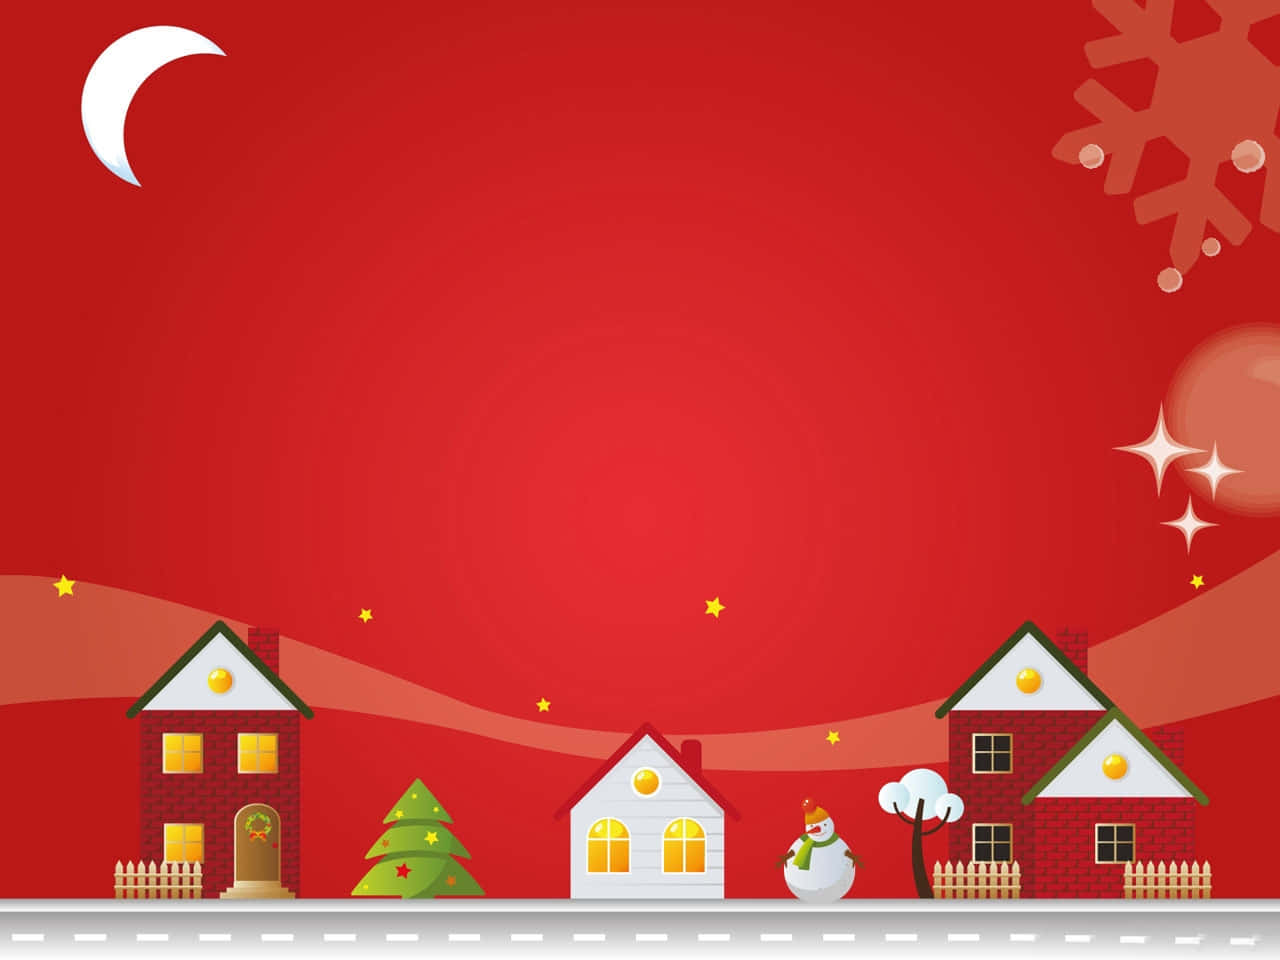 Cartoneanimato Di Natale Con Un'immagine Del Villaggio Sotto Un Cielo Rosso Durante Le Vacanze.